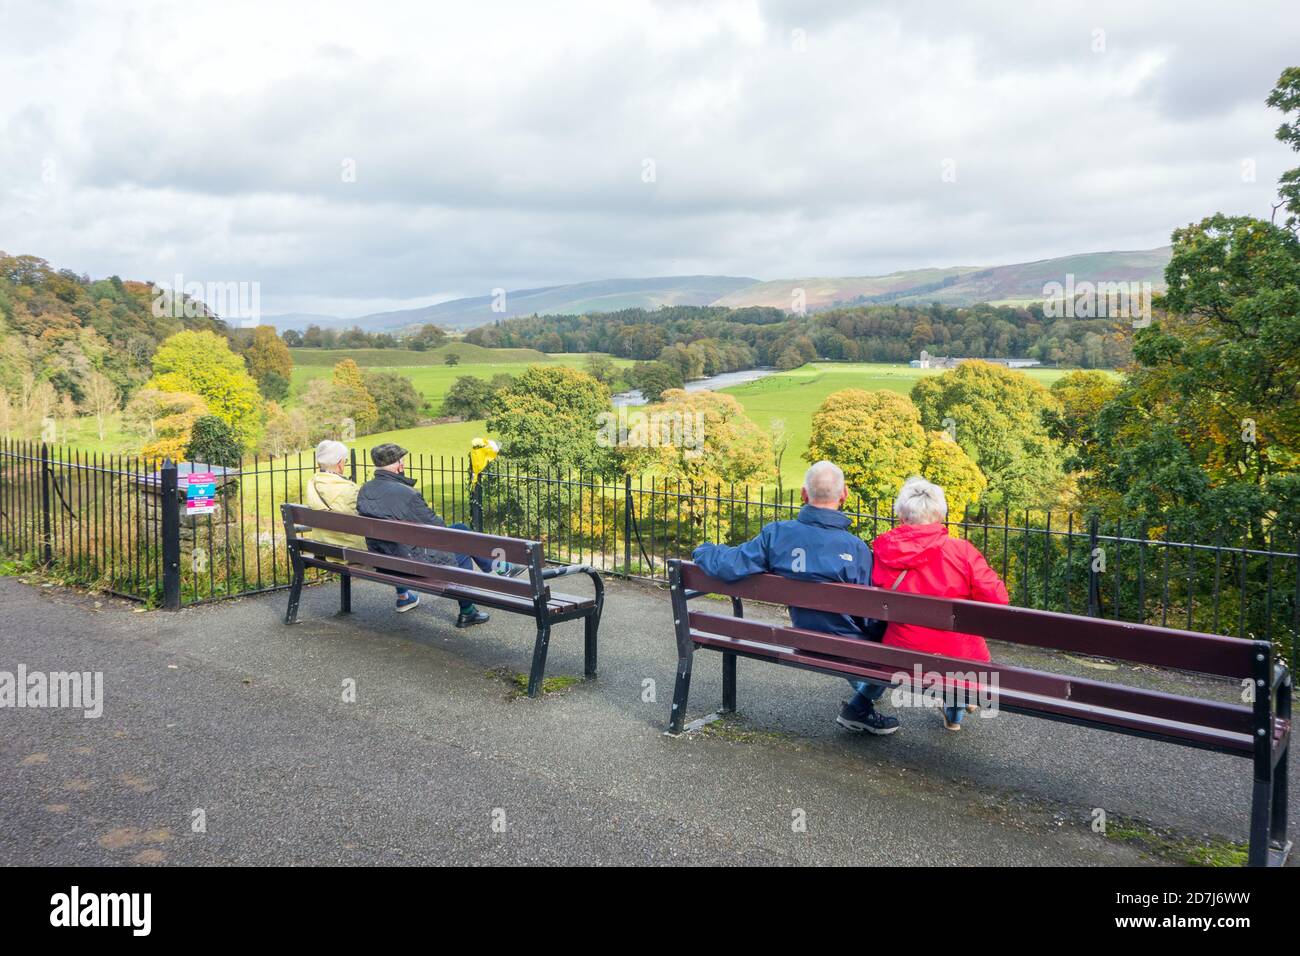 Les gens appréciant la vue sur la rivière Lune depuis le Point de vue de Ruskin dans la ville marchande de Cumbrian Kirkby Lonsdale Cumbria Angleterre Royaume-Uni Banque D'Images